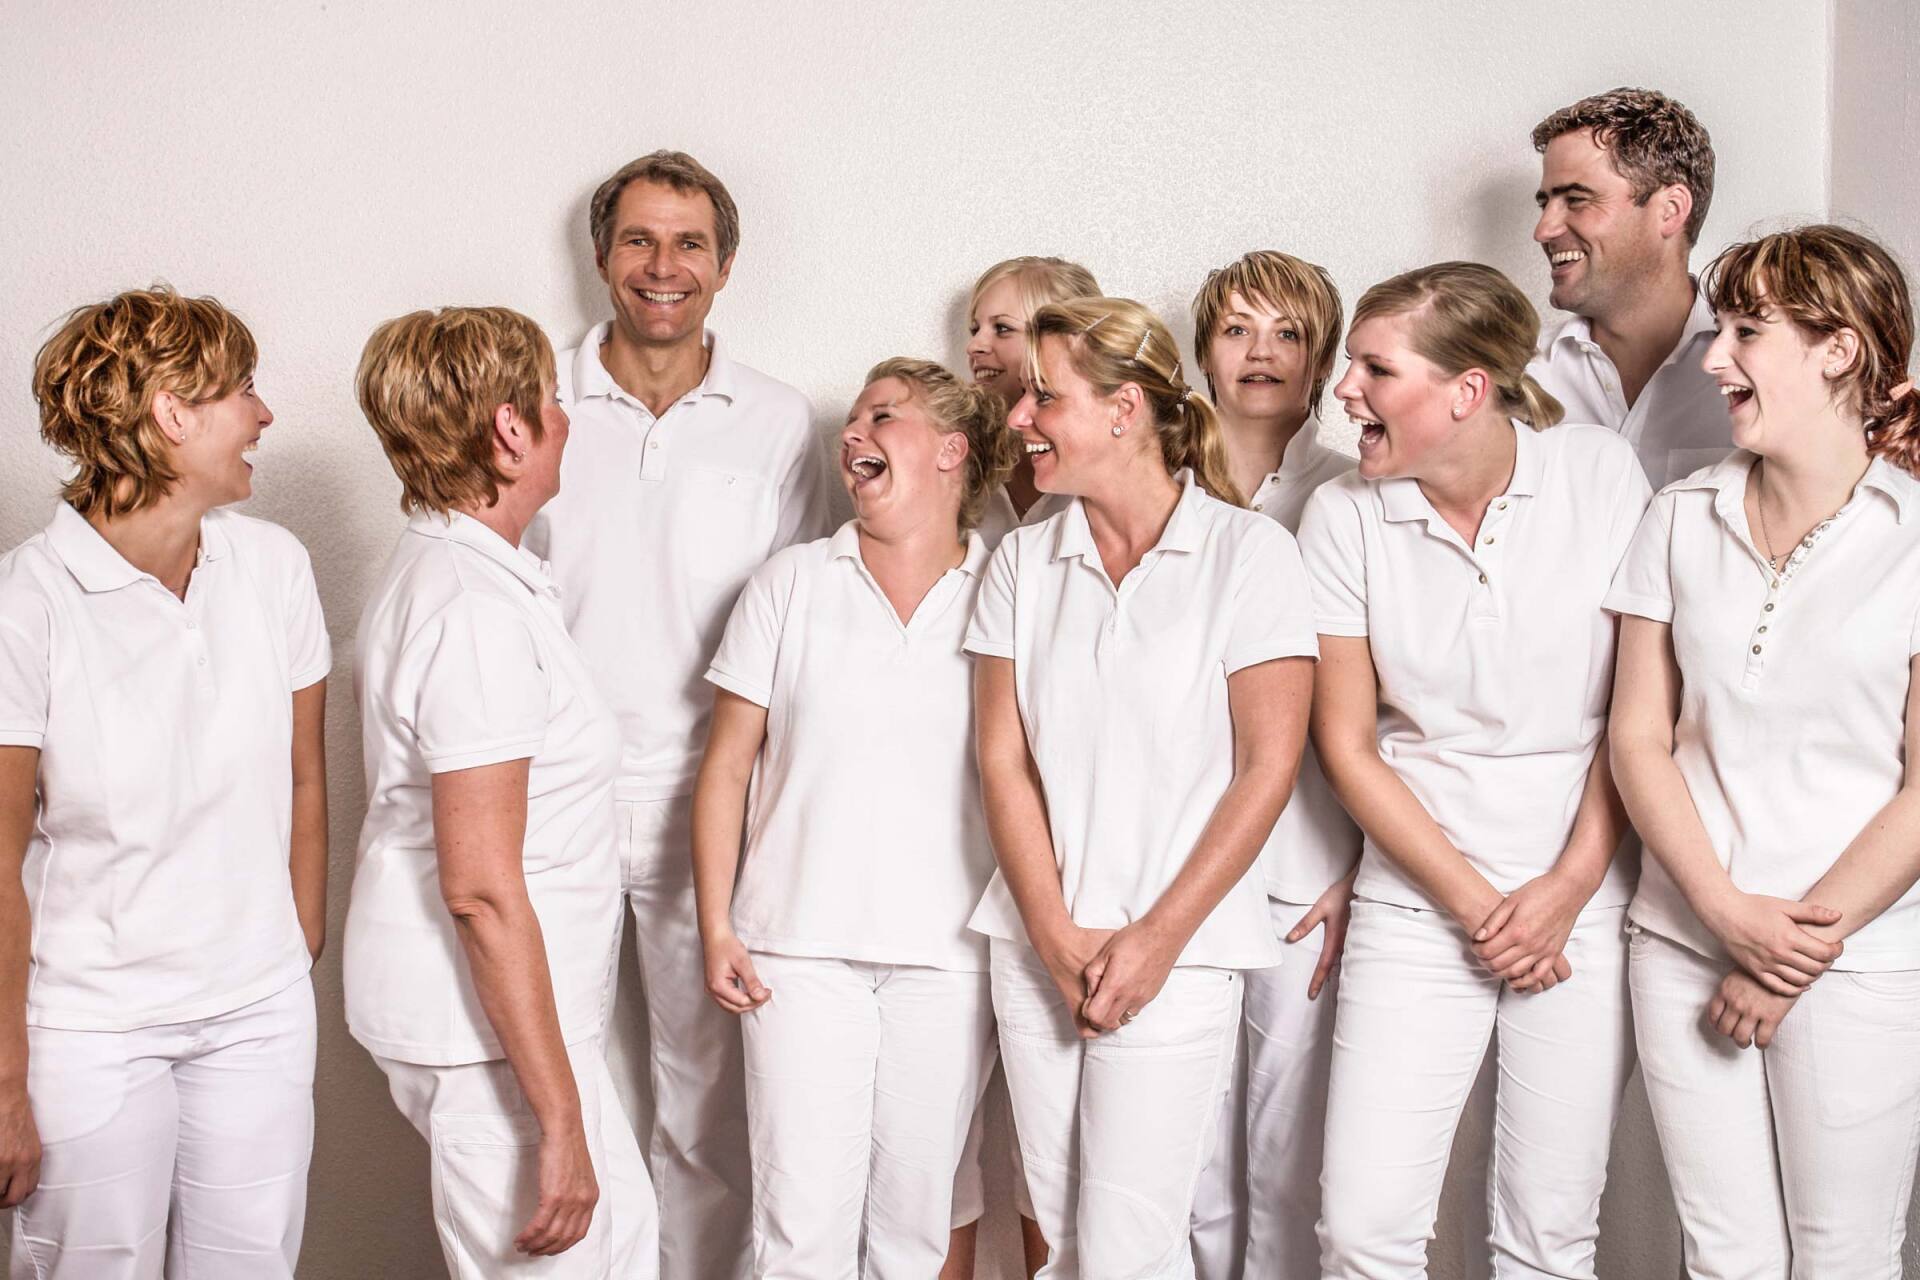 Das Team eines Arztes lacht über den Scherz ihres Chefs, Businessfotografie aus Hamburg von Kay Winter / WINTERPOL